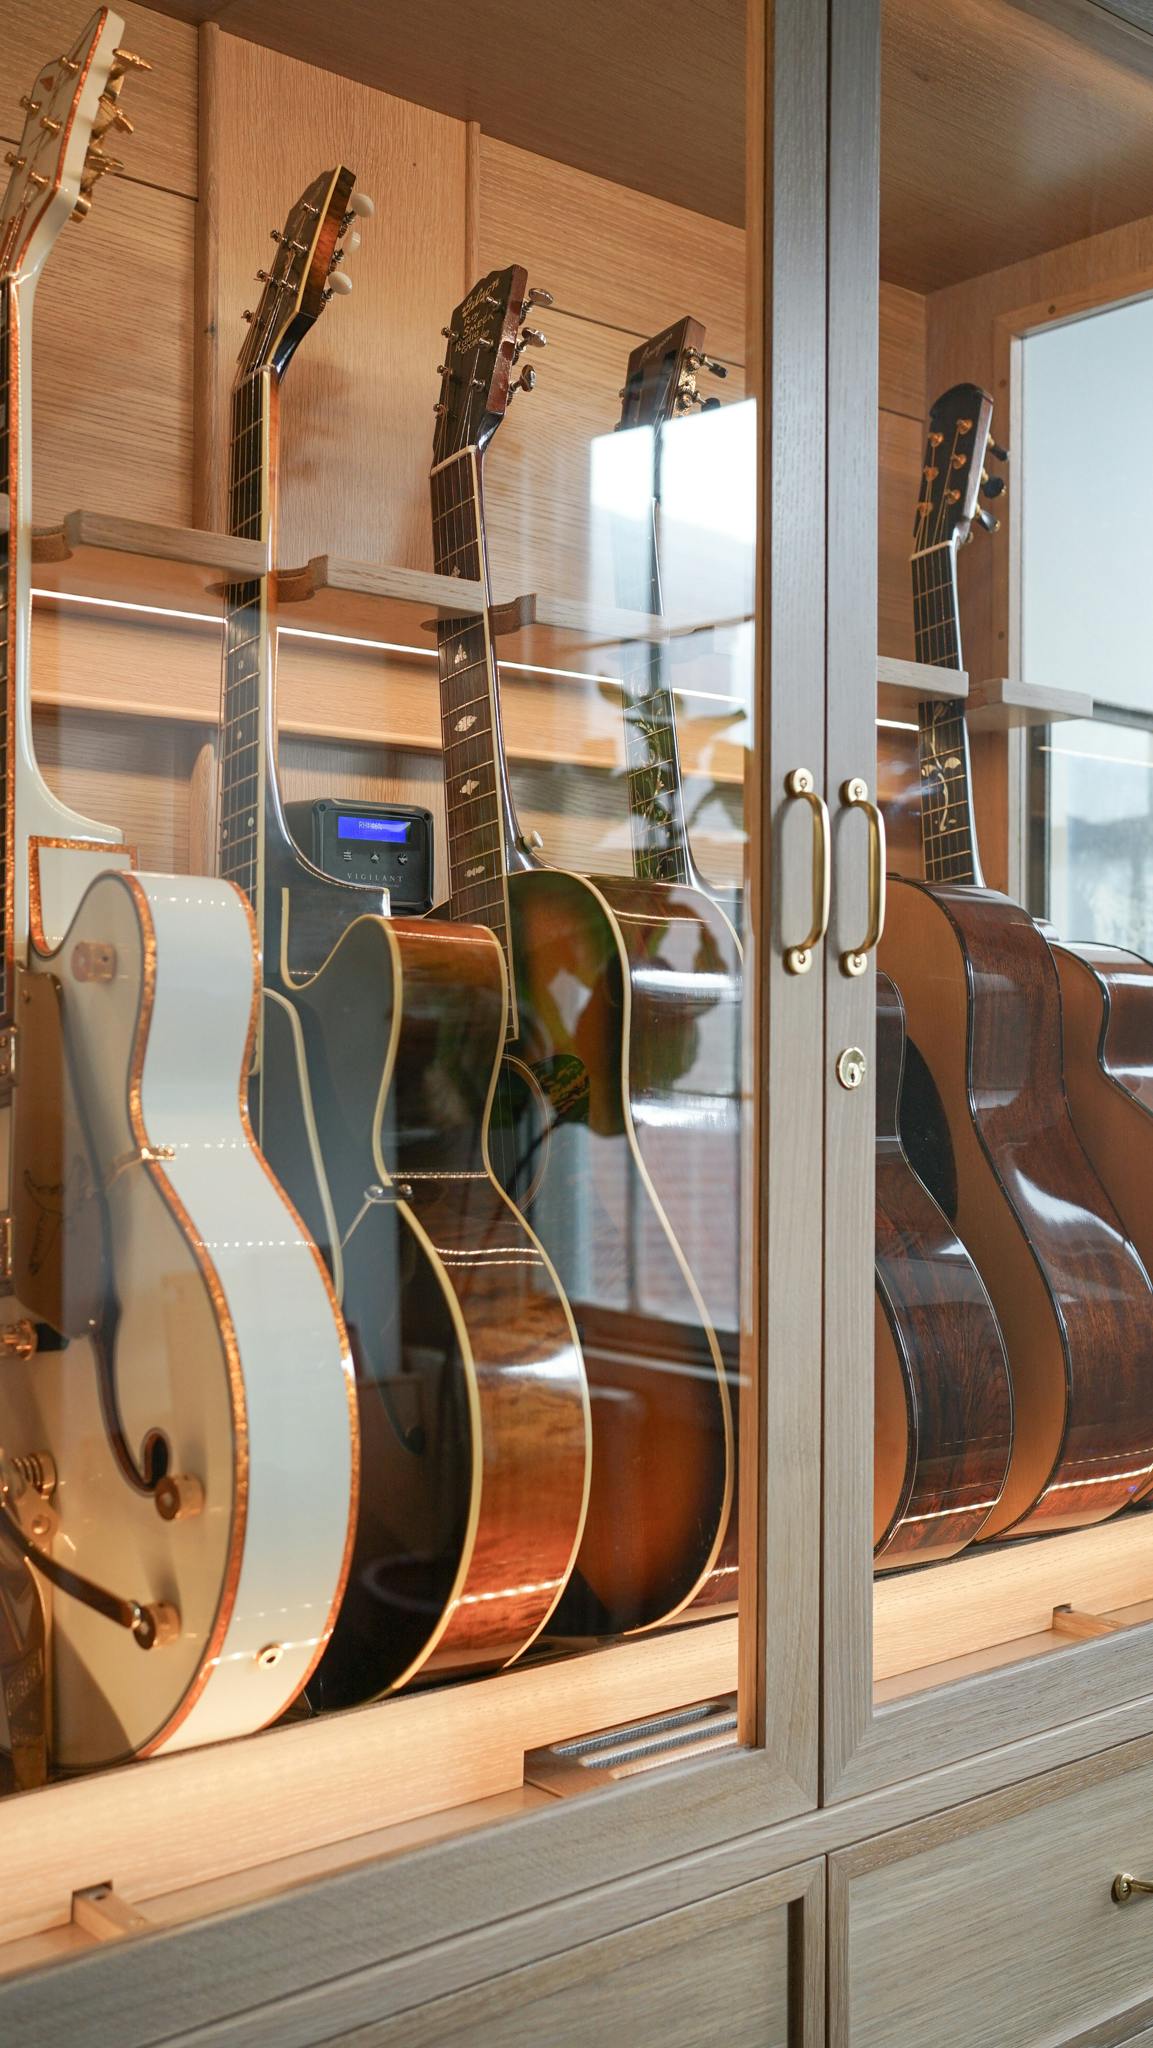 Guitar Stands - American Music Furniture